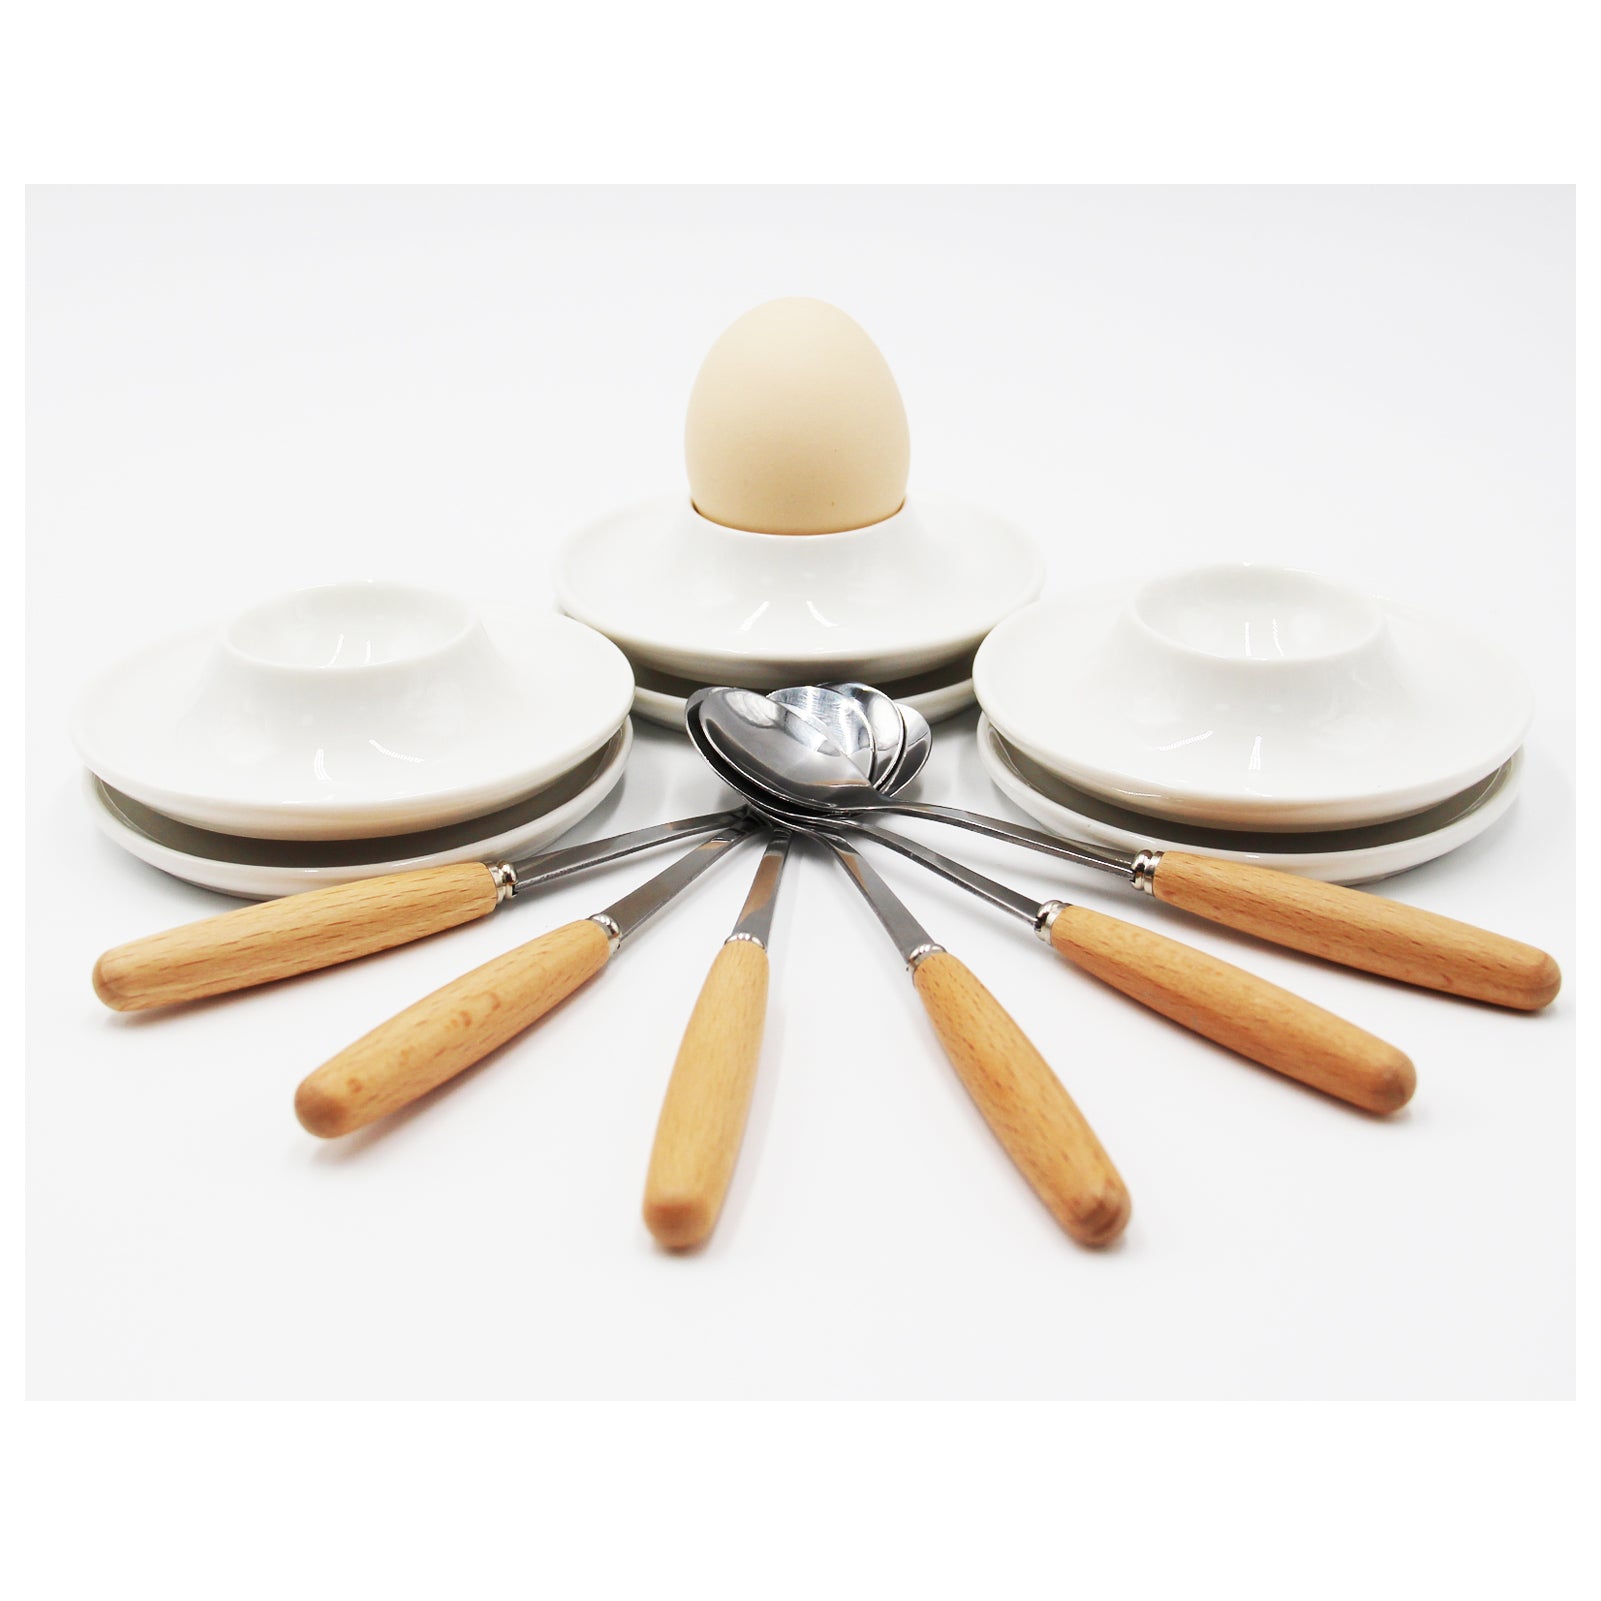 JAMOR Round Egg Ceramic Egg Cup White Ceramic Egg Rack Set Egg Tray Egg Cup Holder, Used For Hard And Soft Boiled Eggs Ceramic Egg Rack